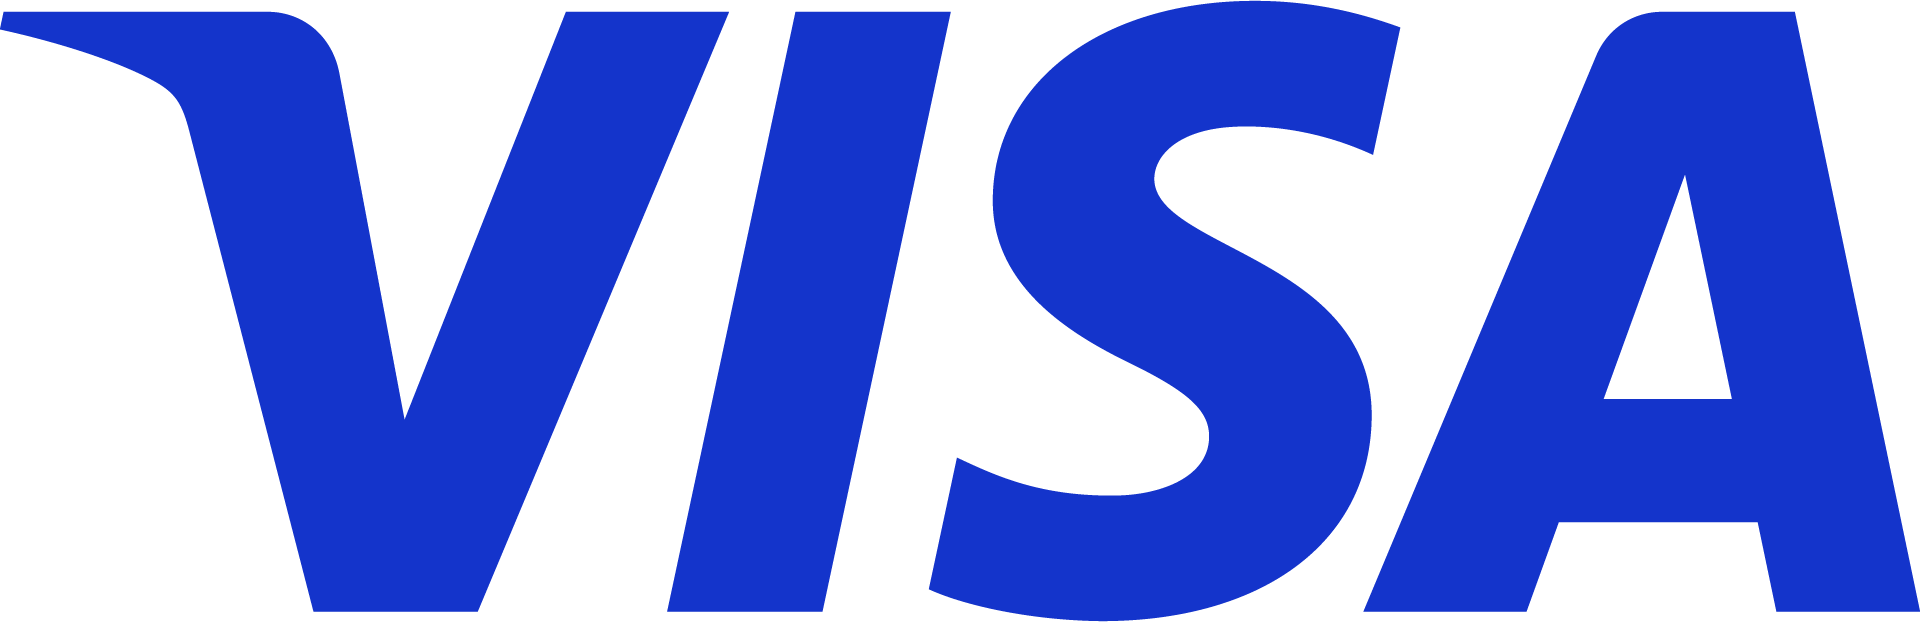 Visa Logo Blue Blk.png